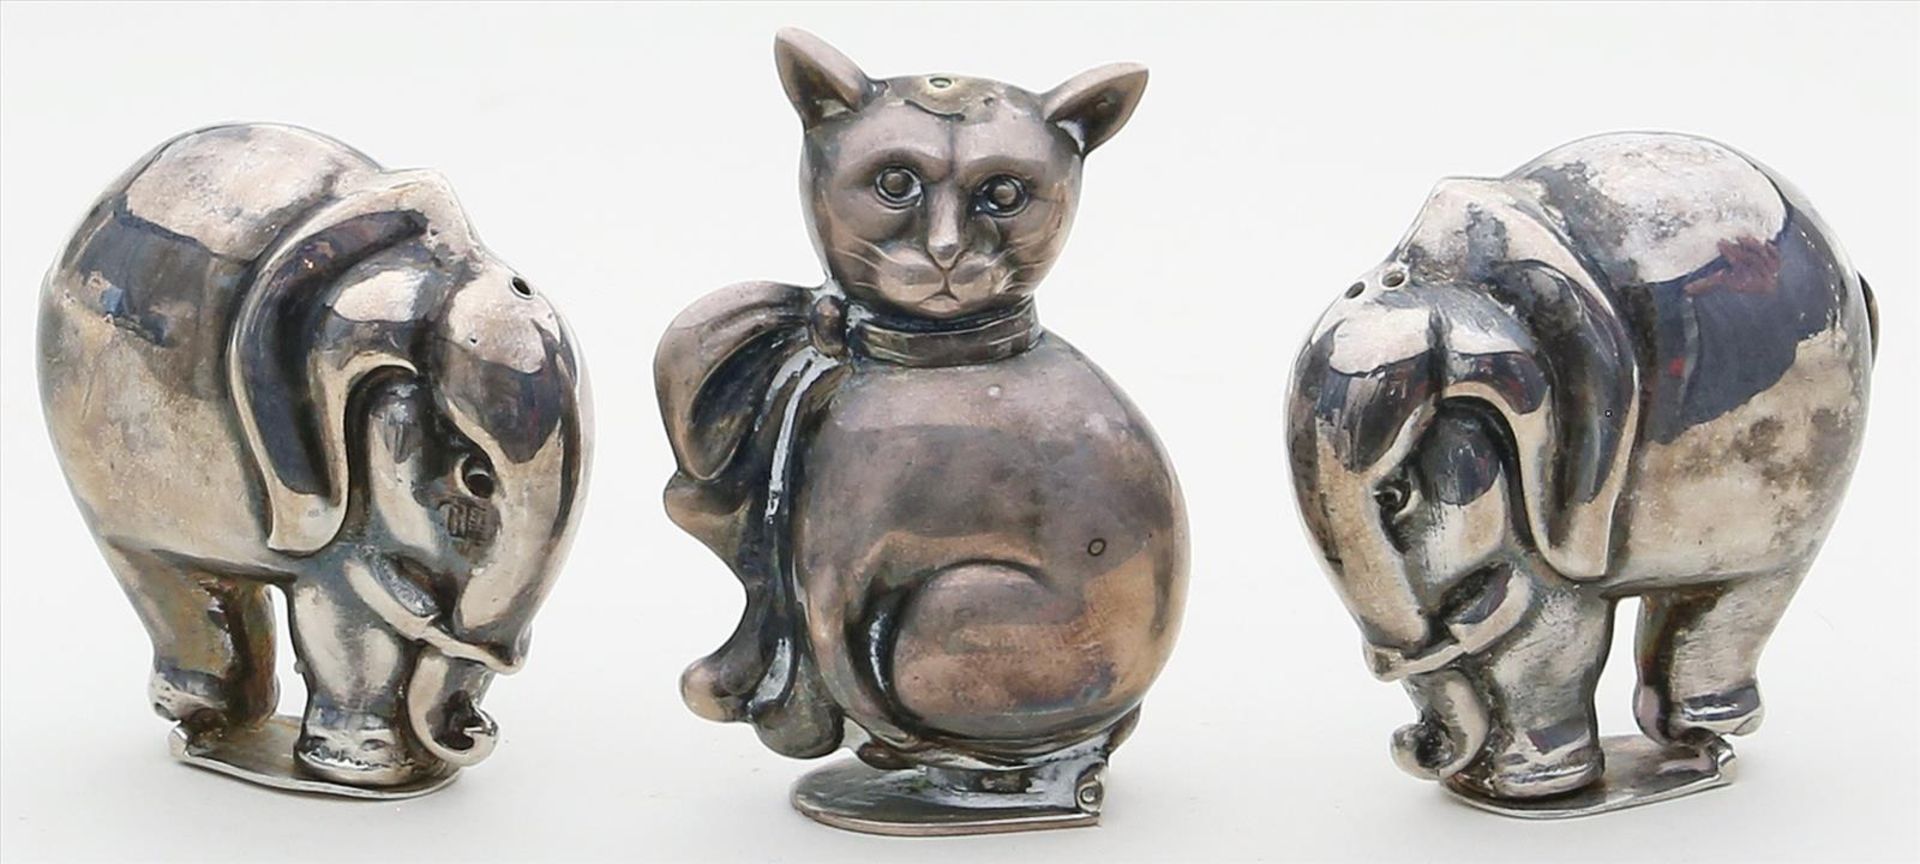 3 figürliche Salzstreuer "Elefanten" und "Katze".925/000 Sterlingsilber, 60 g. Plastische